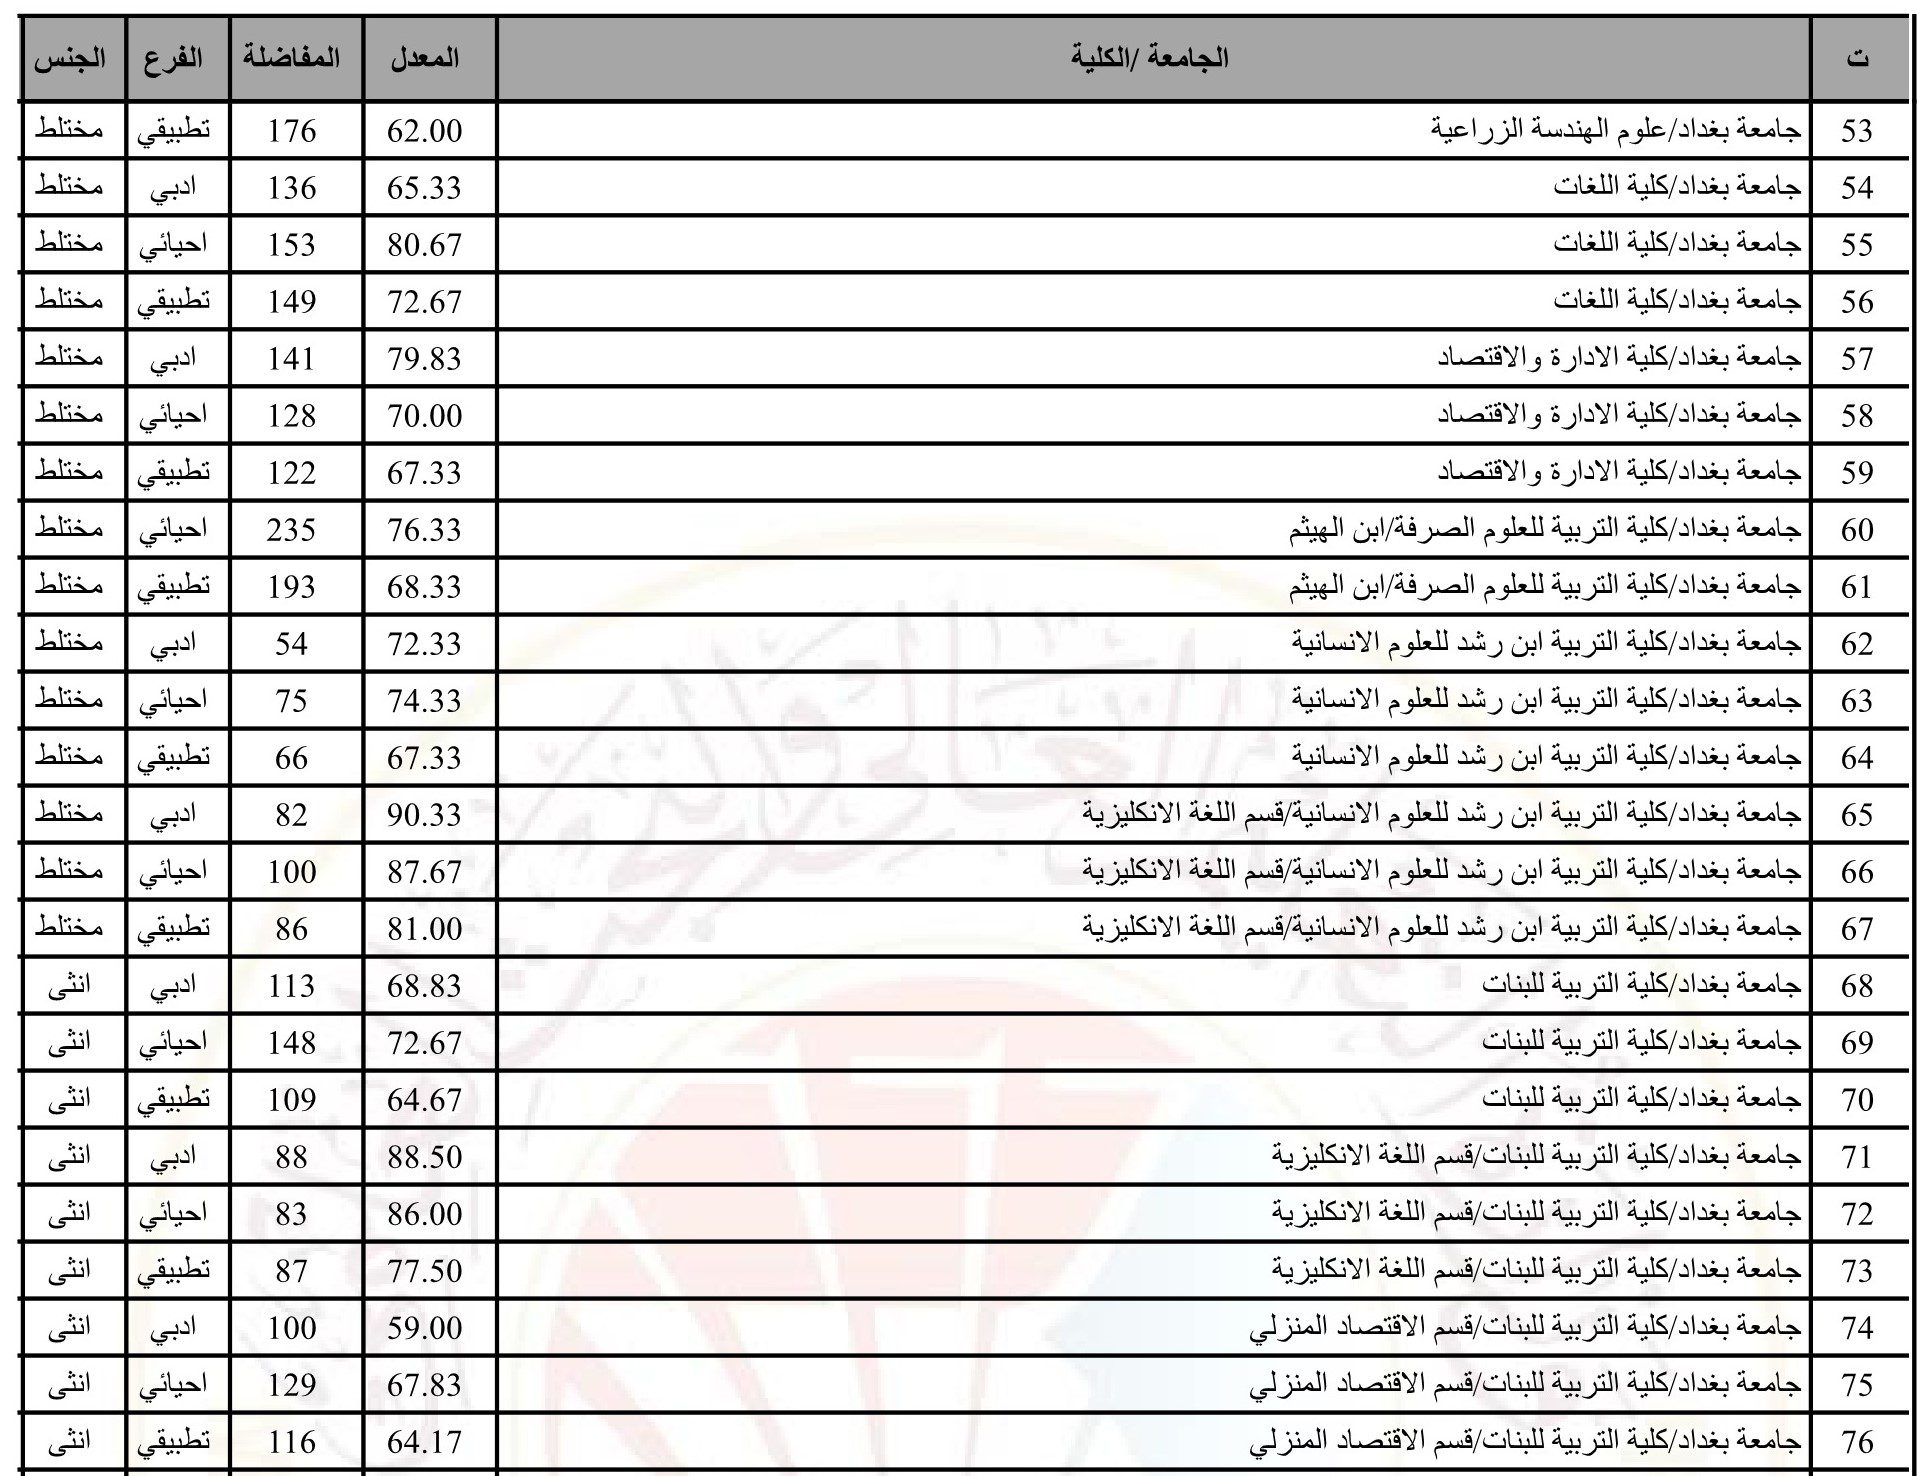 معدلات القبول المركزي 2023 بالرقم الامتحاني الحدود الدنيا للقبول في الجامعات العراقية الحكومية